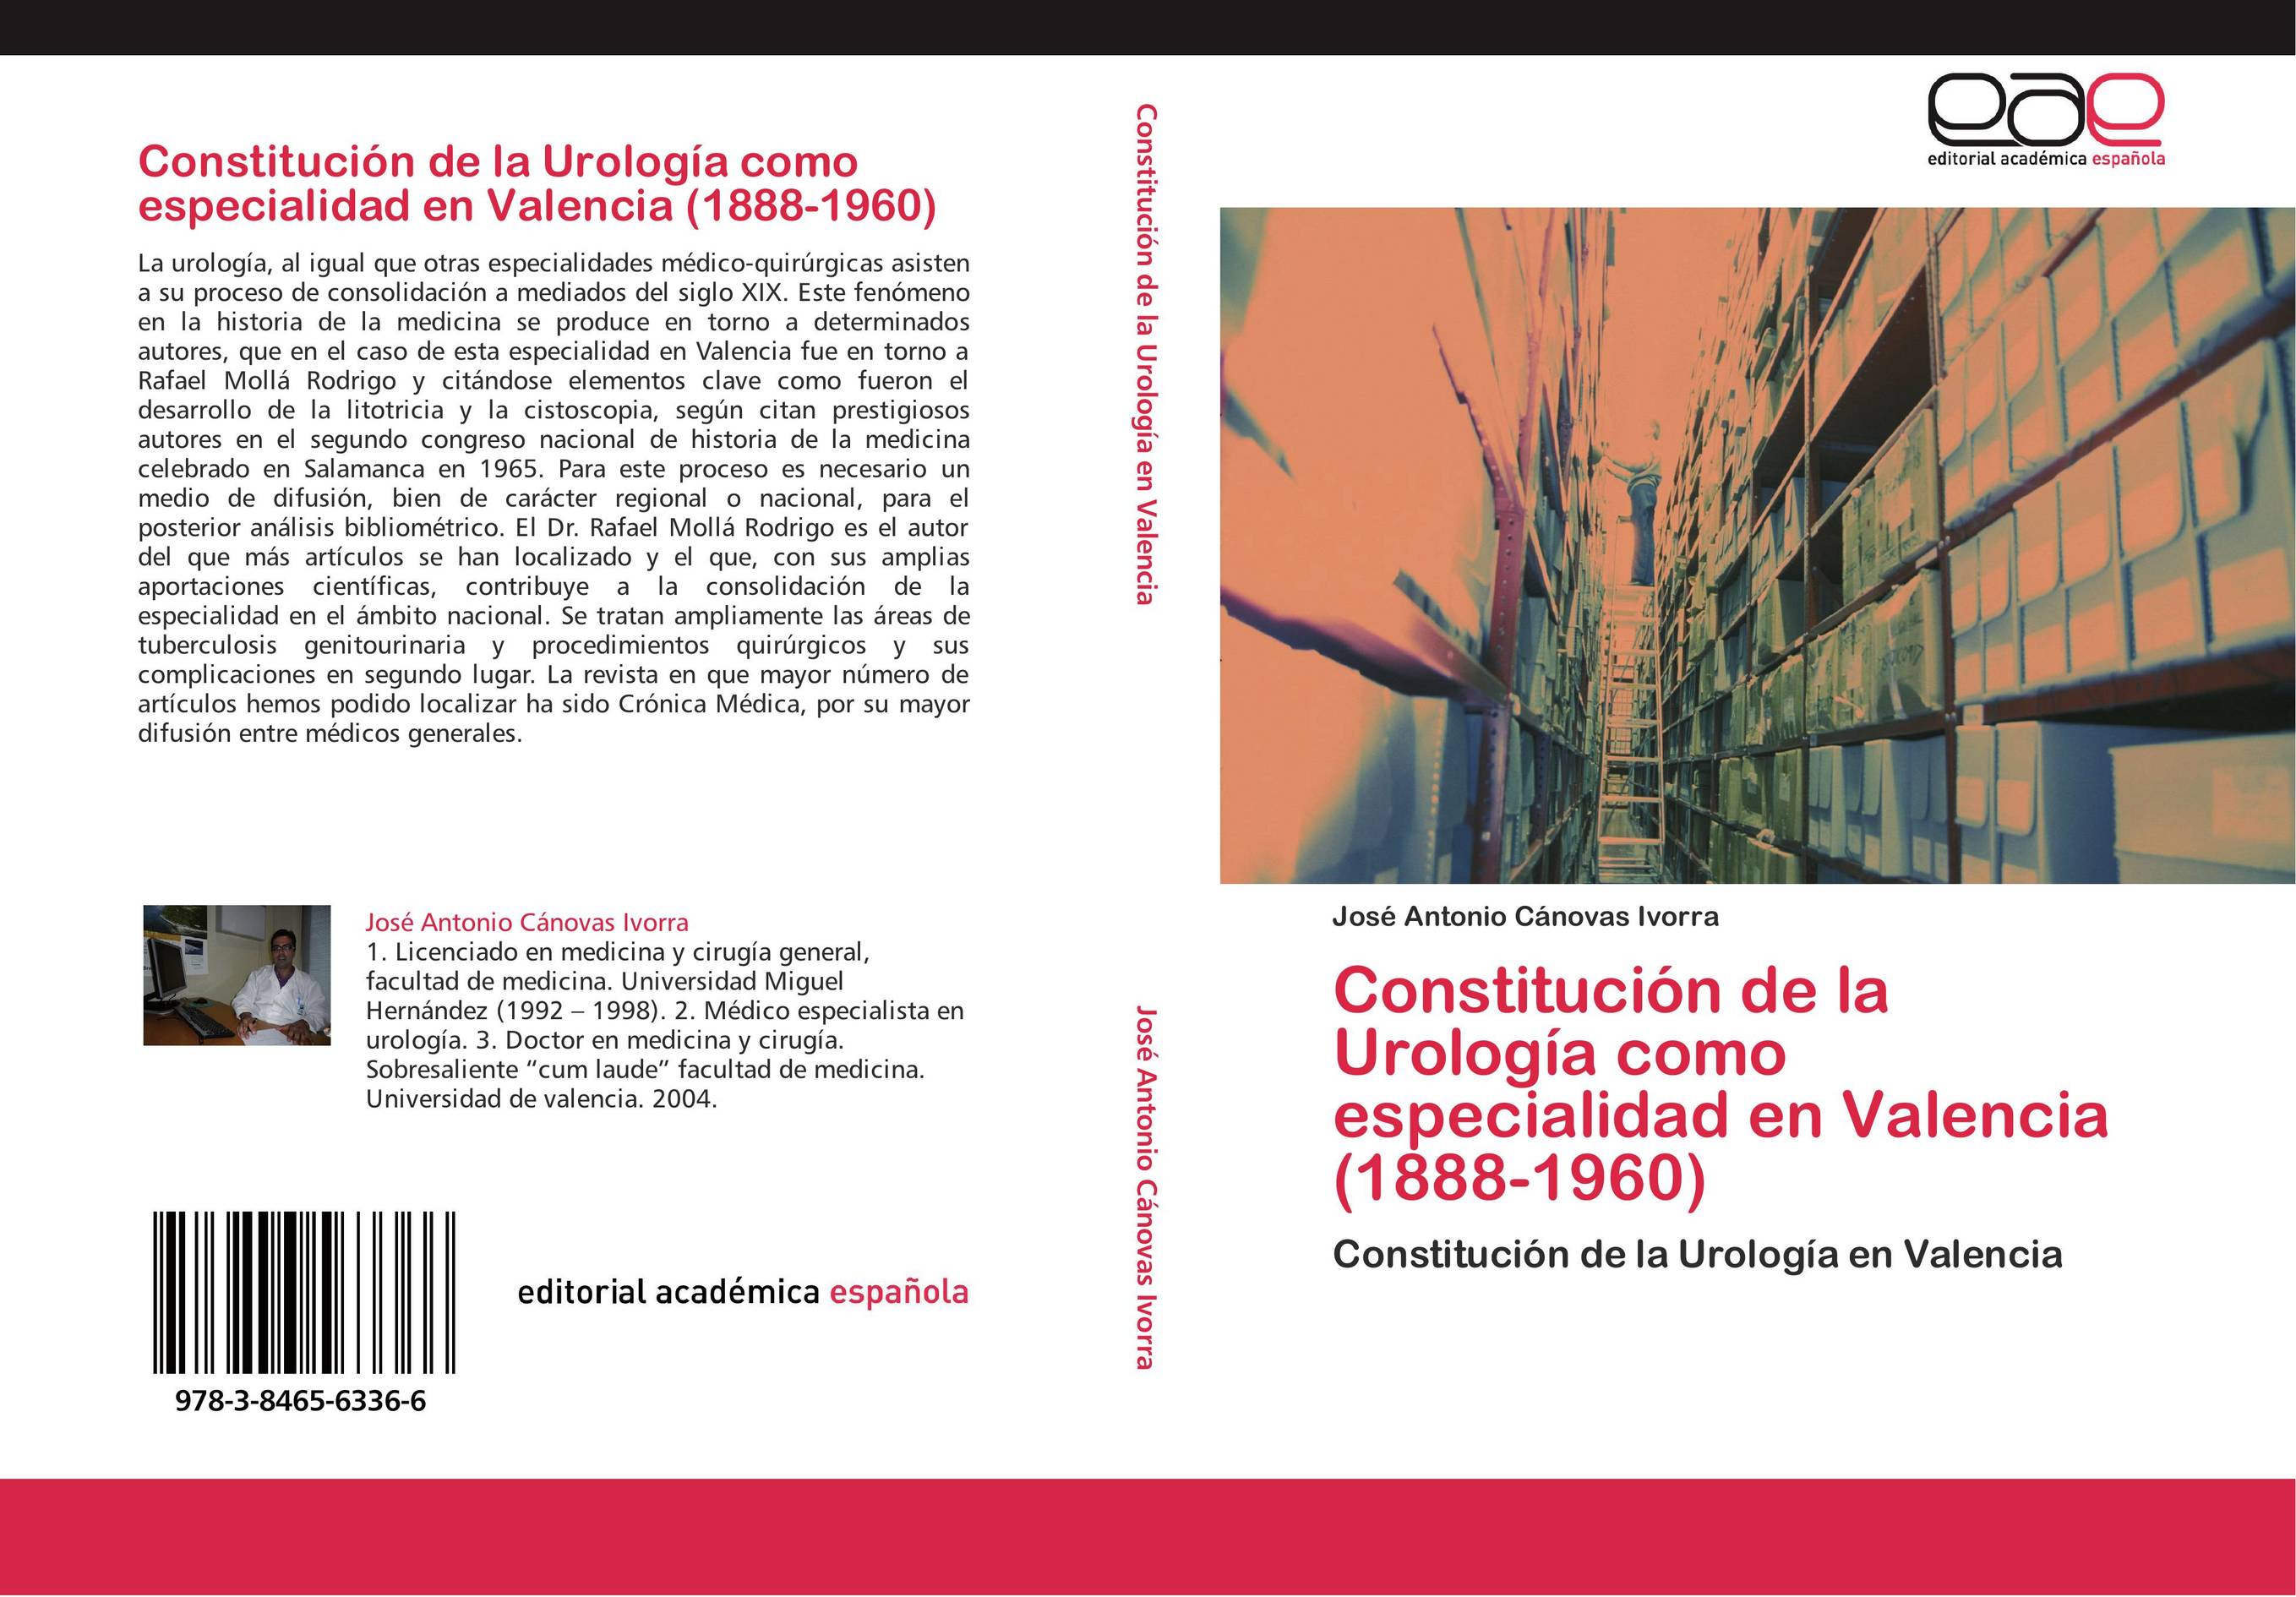 Constitución de la Urología como especialidad en Valencia (1888-1960)